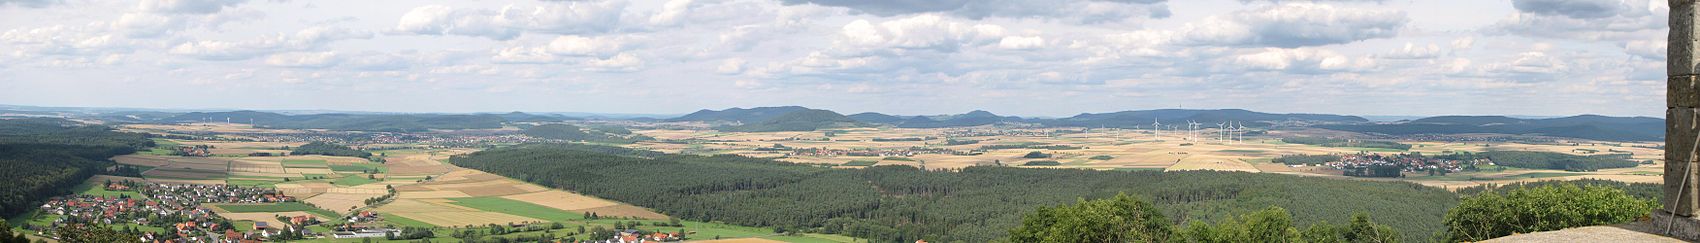 Von der Weidelsburg kann man fast den gesamten Naturpark überblicken. Hier der Nordostblick: Links vorne im Panorama ist Ippinghausen zu erkennen. Schräg rechts darüber sieht man Wolfhagen. Am Horizont in der Bildmitte ist der Große Bärenberg mit Funk- und Aussichtsturm zu erkennen. Weiter rechts oberhalb der Windkraftanlagen liegt der Habichtswald